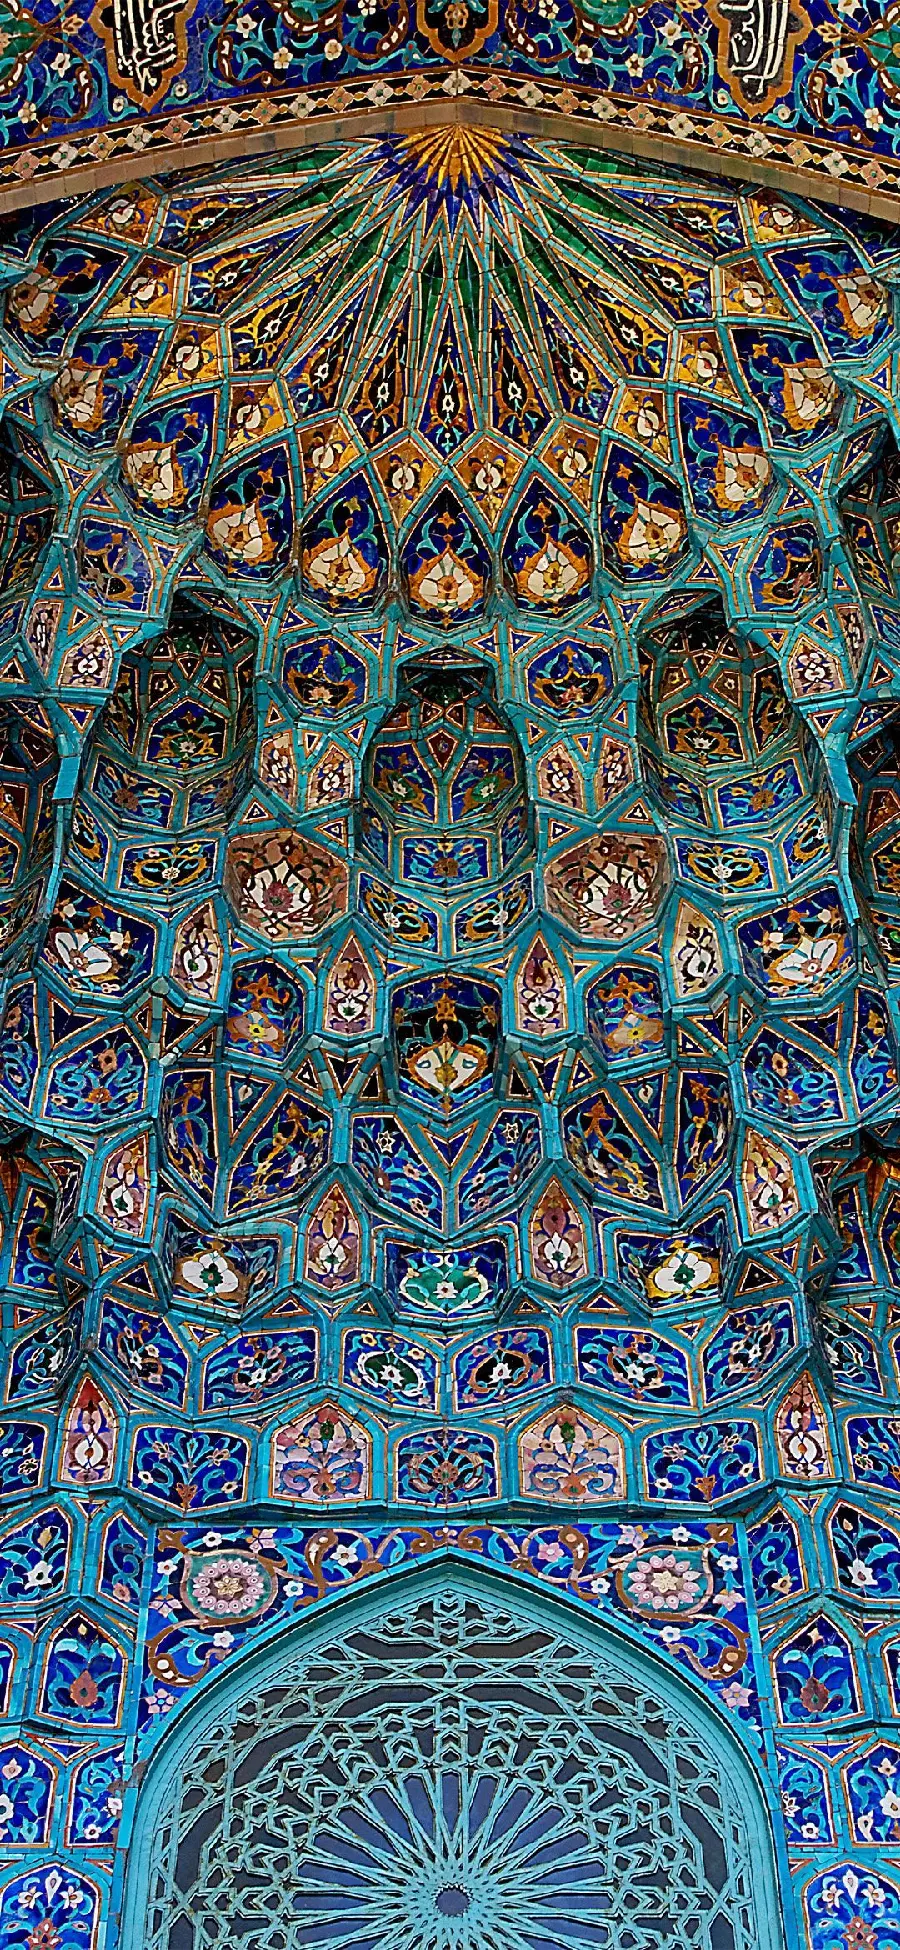 والپیپر از معماری اسلامی با طراحی هندسی و تزئینات مذهبی